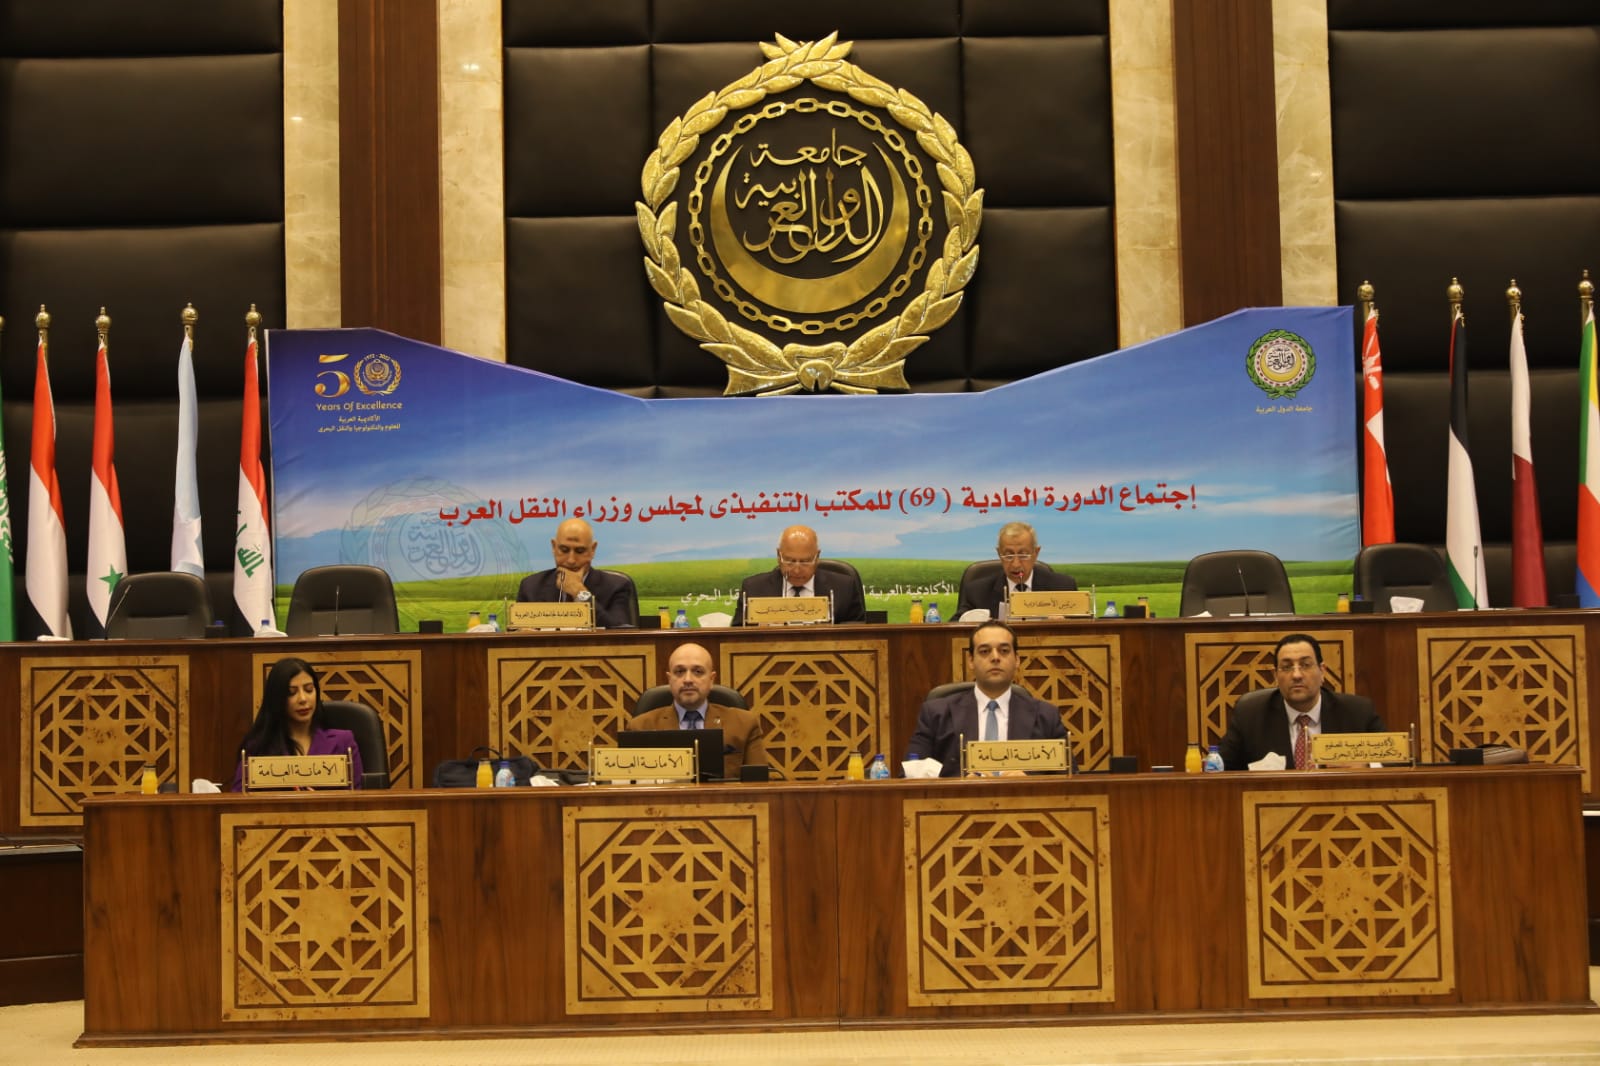 وزير النقل يترأس اجتماع الدورة العادية رقم 69  للمكتب التنفيذي لمجلس وزراء النقل العرب